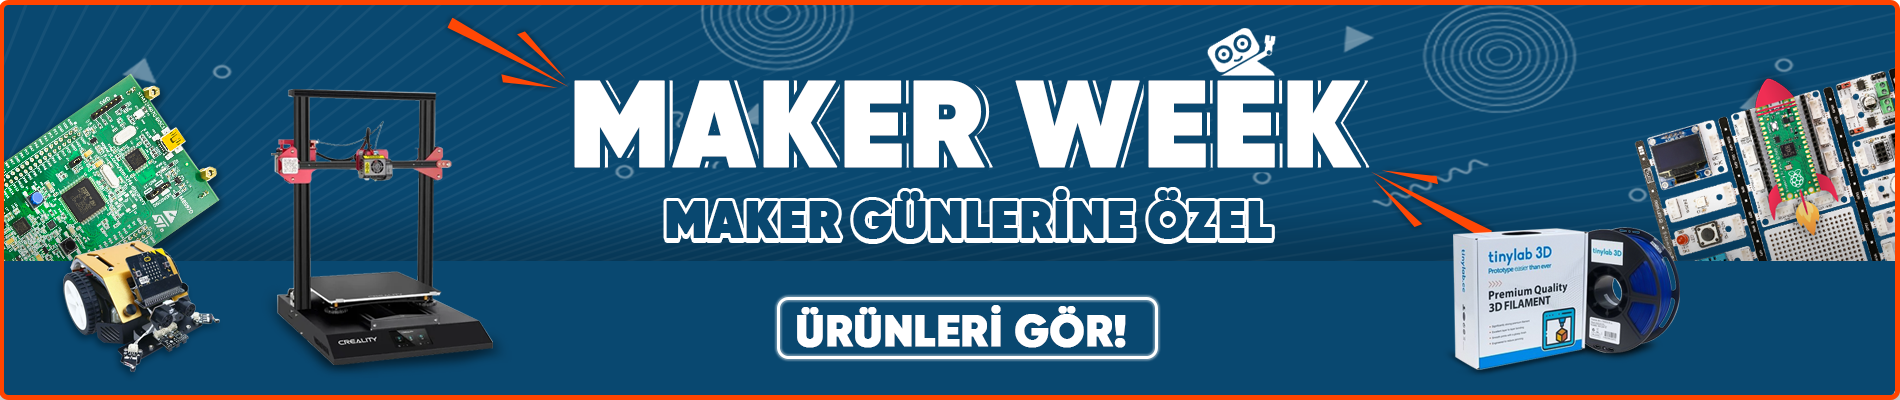 maker-week-BANNER.png (533 KB)